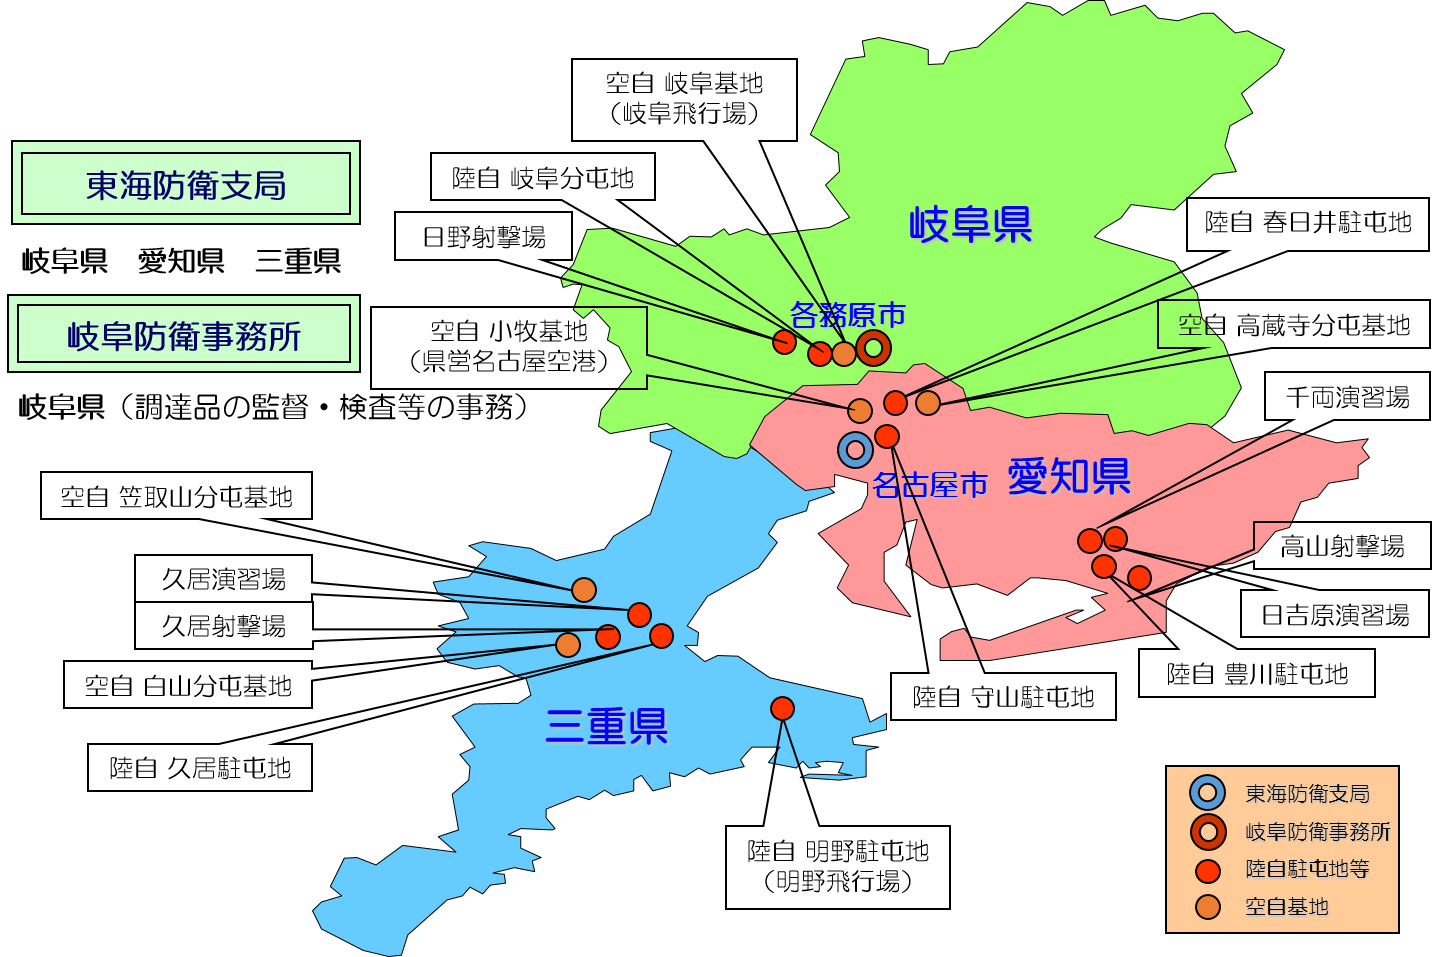 管轄区域及び管轄区域内の主要防衛施設を示した図